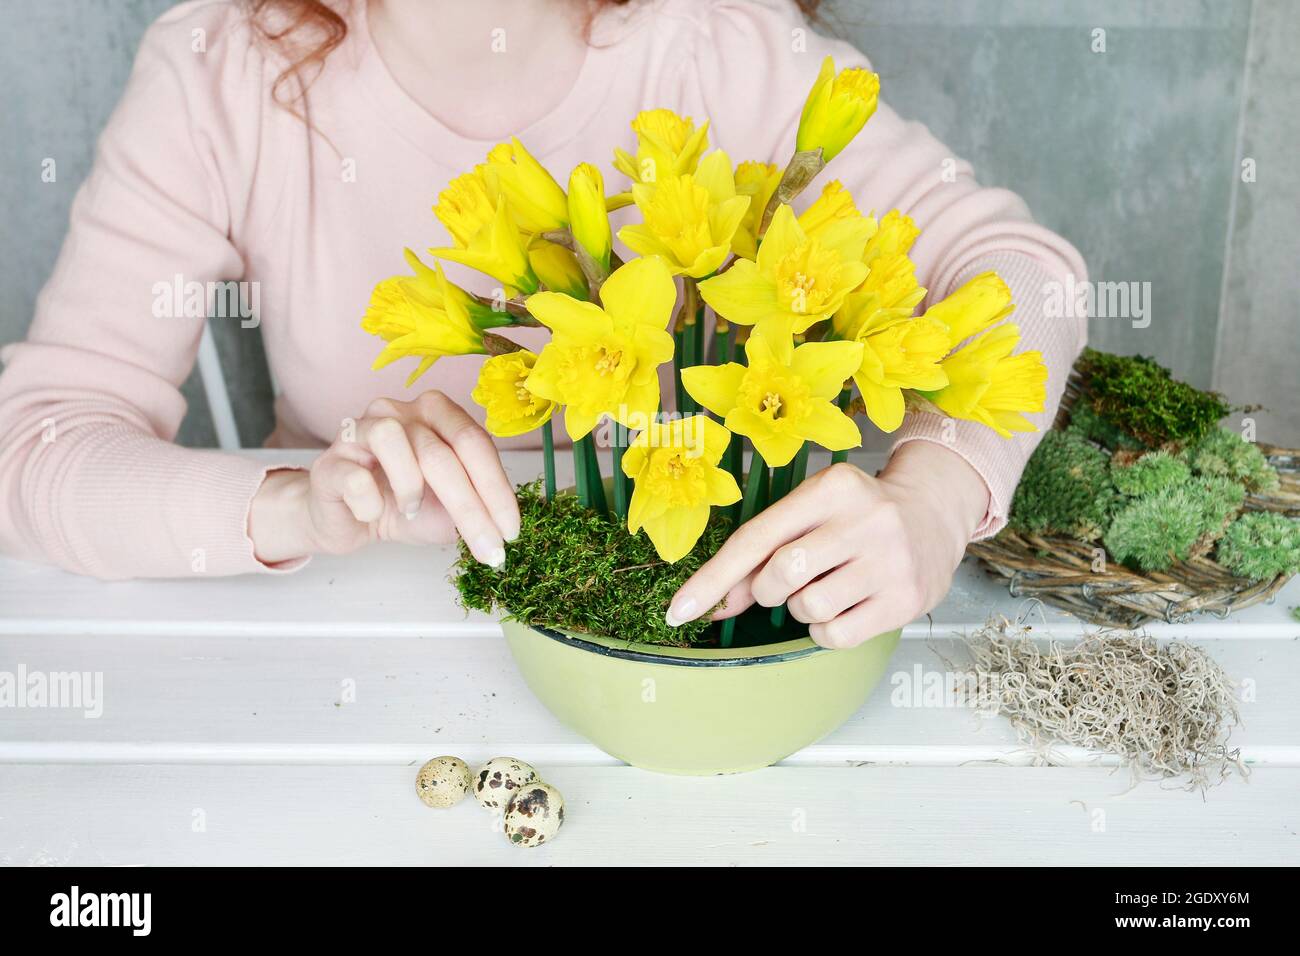 Fleuriste au travail: Comment faire la décoration de table de Pâques avec  des jonquilles et de la mousse dans un bol en céramique. Idées de  décoration printanière. Étape par étape, tutoriel Photo